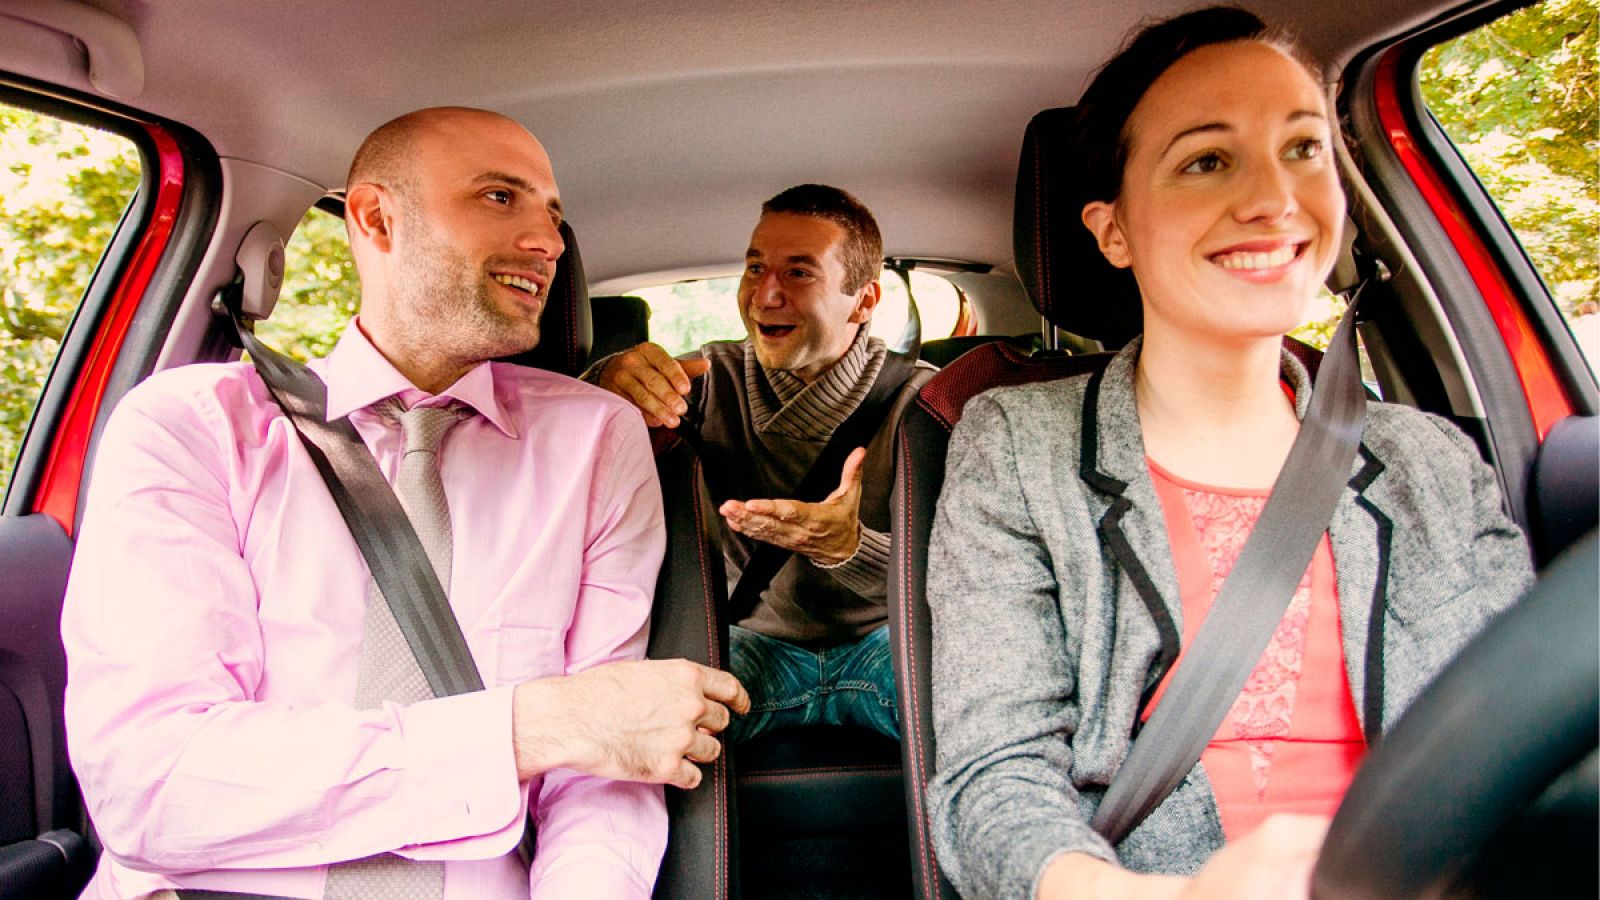 Fotografía facilitada por BlaBlaCar de tres pasajeros que comparten un viaje en coche